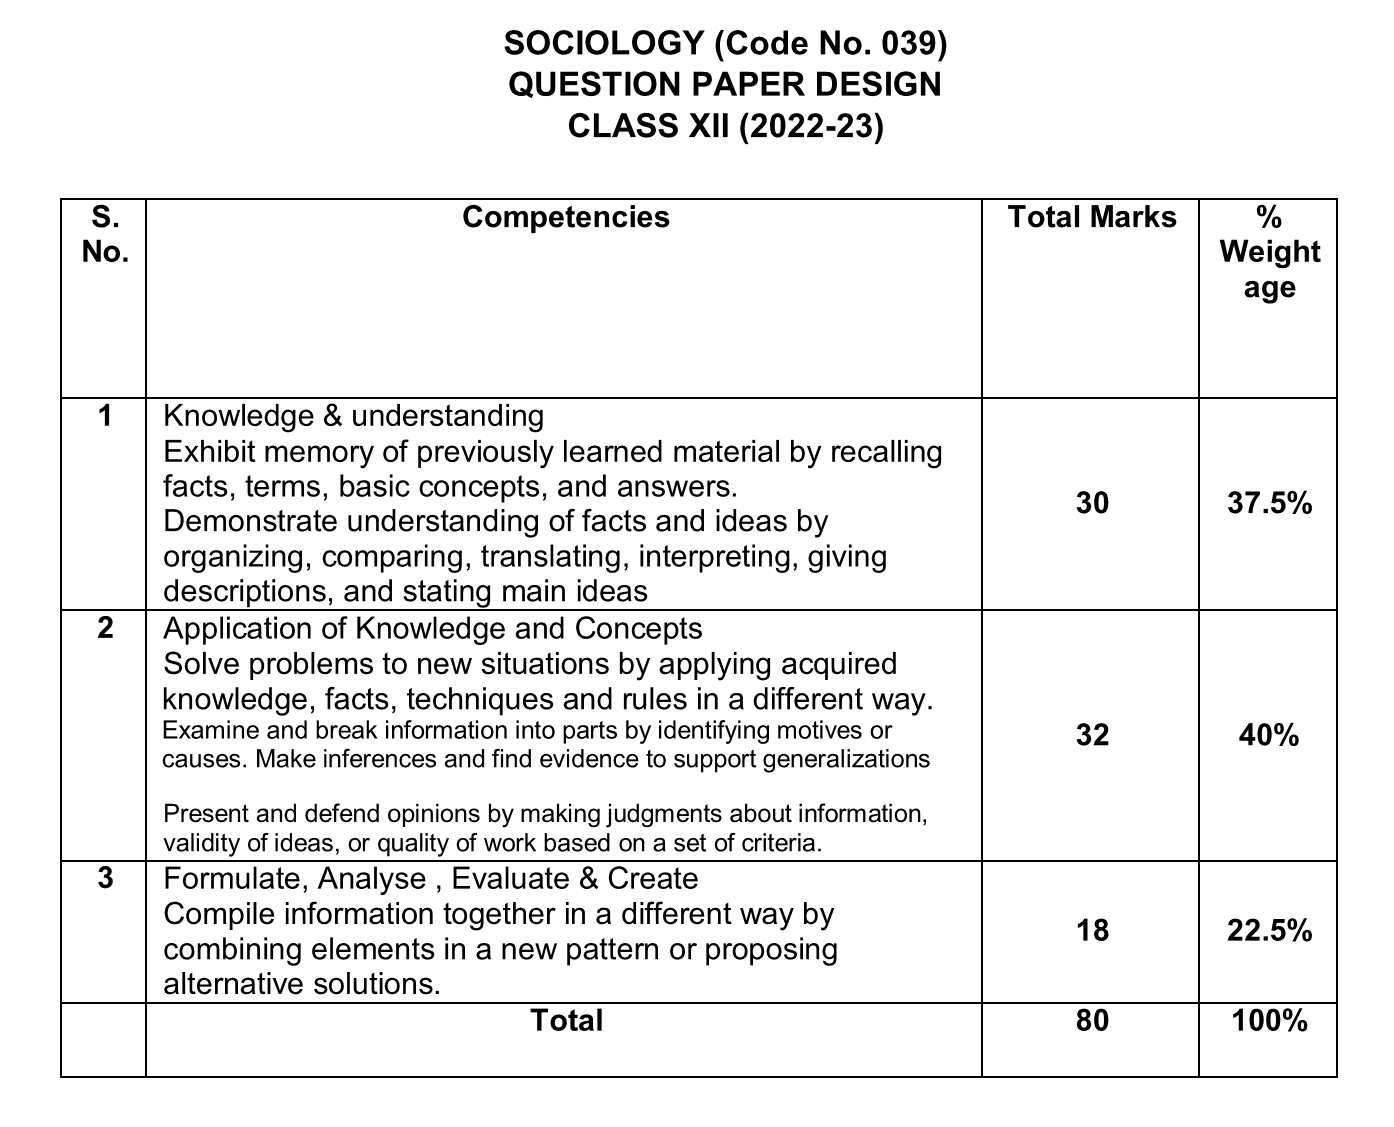 CBSE Class 12 Sociology Question Paper Design 2022-23